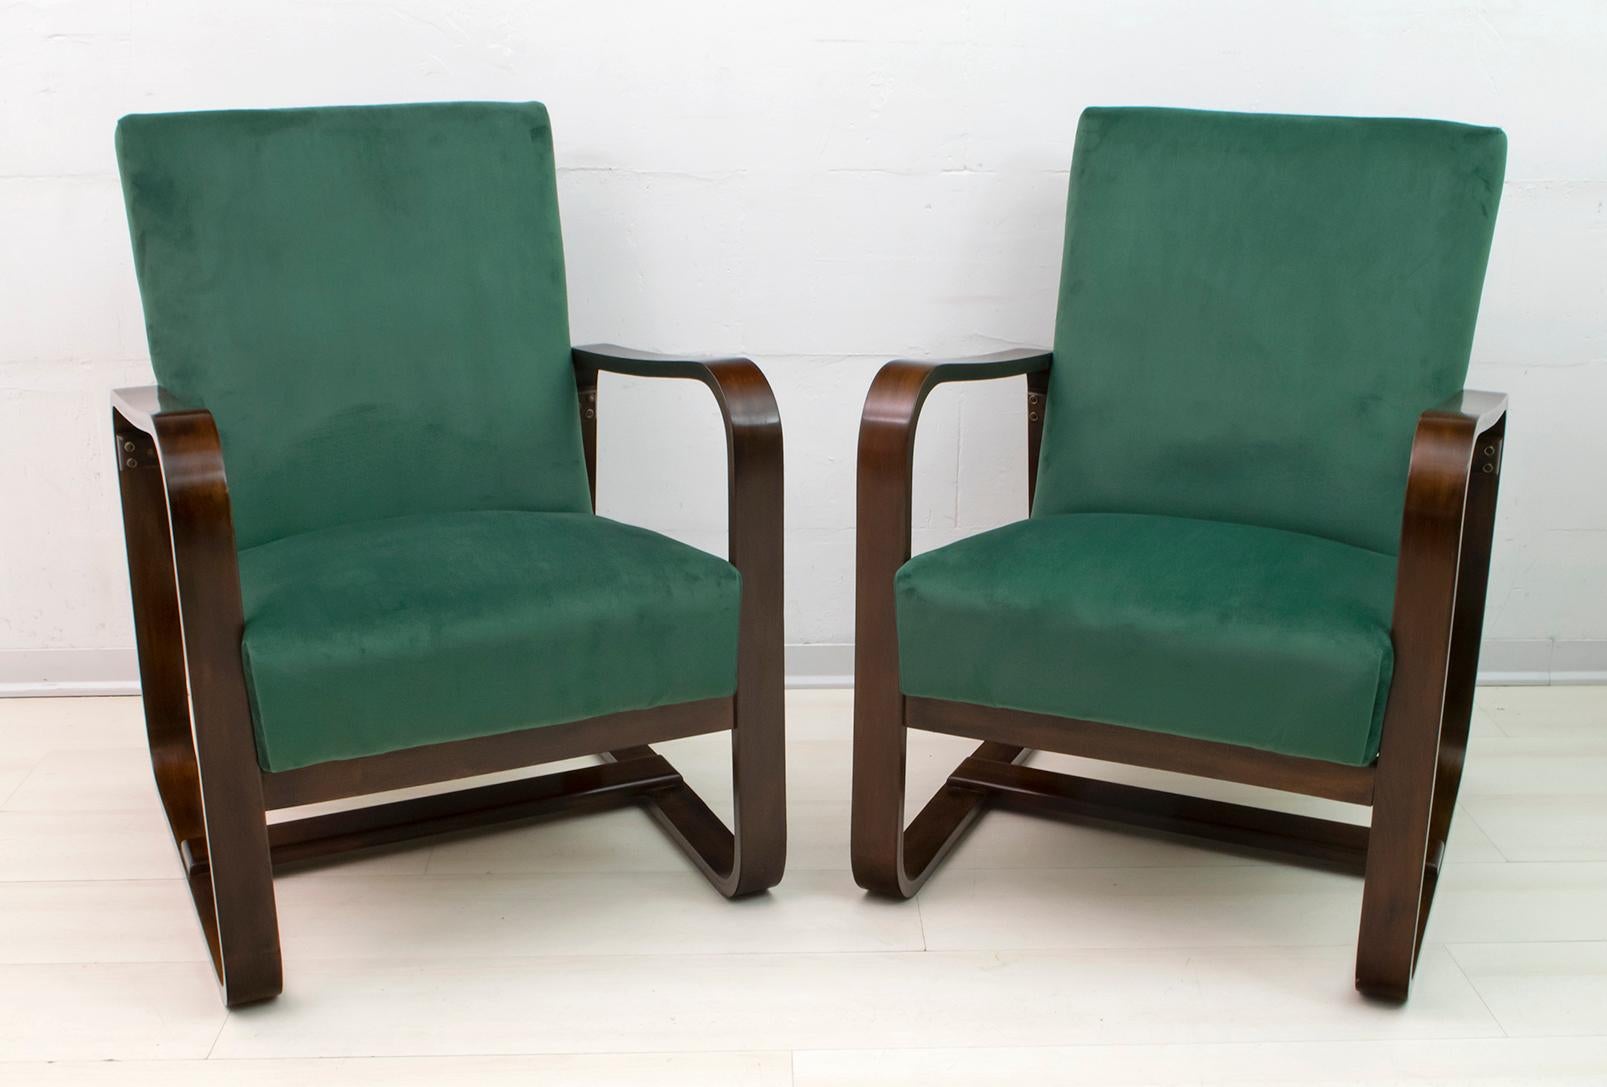 Elegantes Set aus zwei Art-Déco-Sesseln, entworfen von Giuseppe Pagano Pogatschnig & Gino Maggioni, hergestellt 1939 für die Bocconi-Universität in Mailand. Die Sessel wurden restauriert und mit Samt bezogen.

Giuseppe Pagano (August 1896 - April